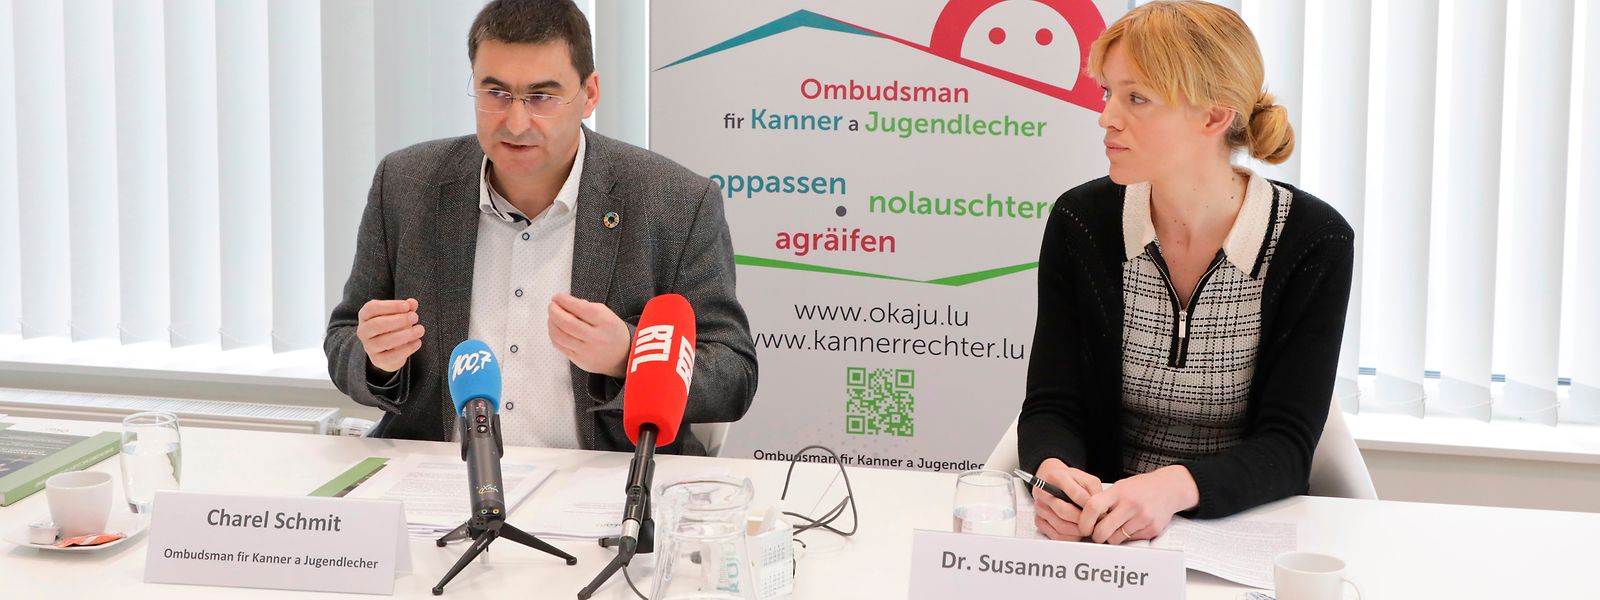 Charel Schmit et le Dr Susanna Greijer, conseillère externe, espèrent que le Parlement améliorera la réforme de la protection des mineurs. 